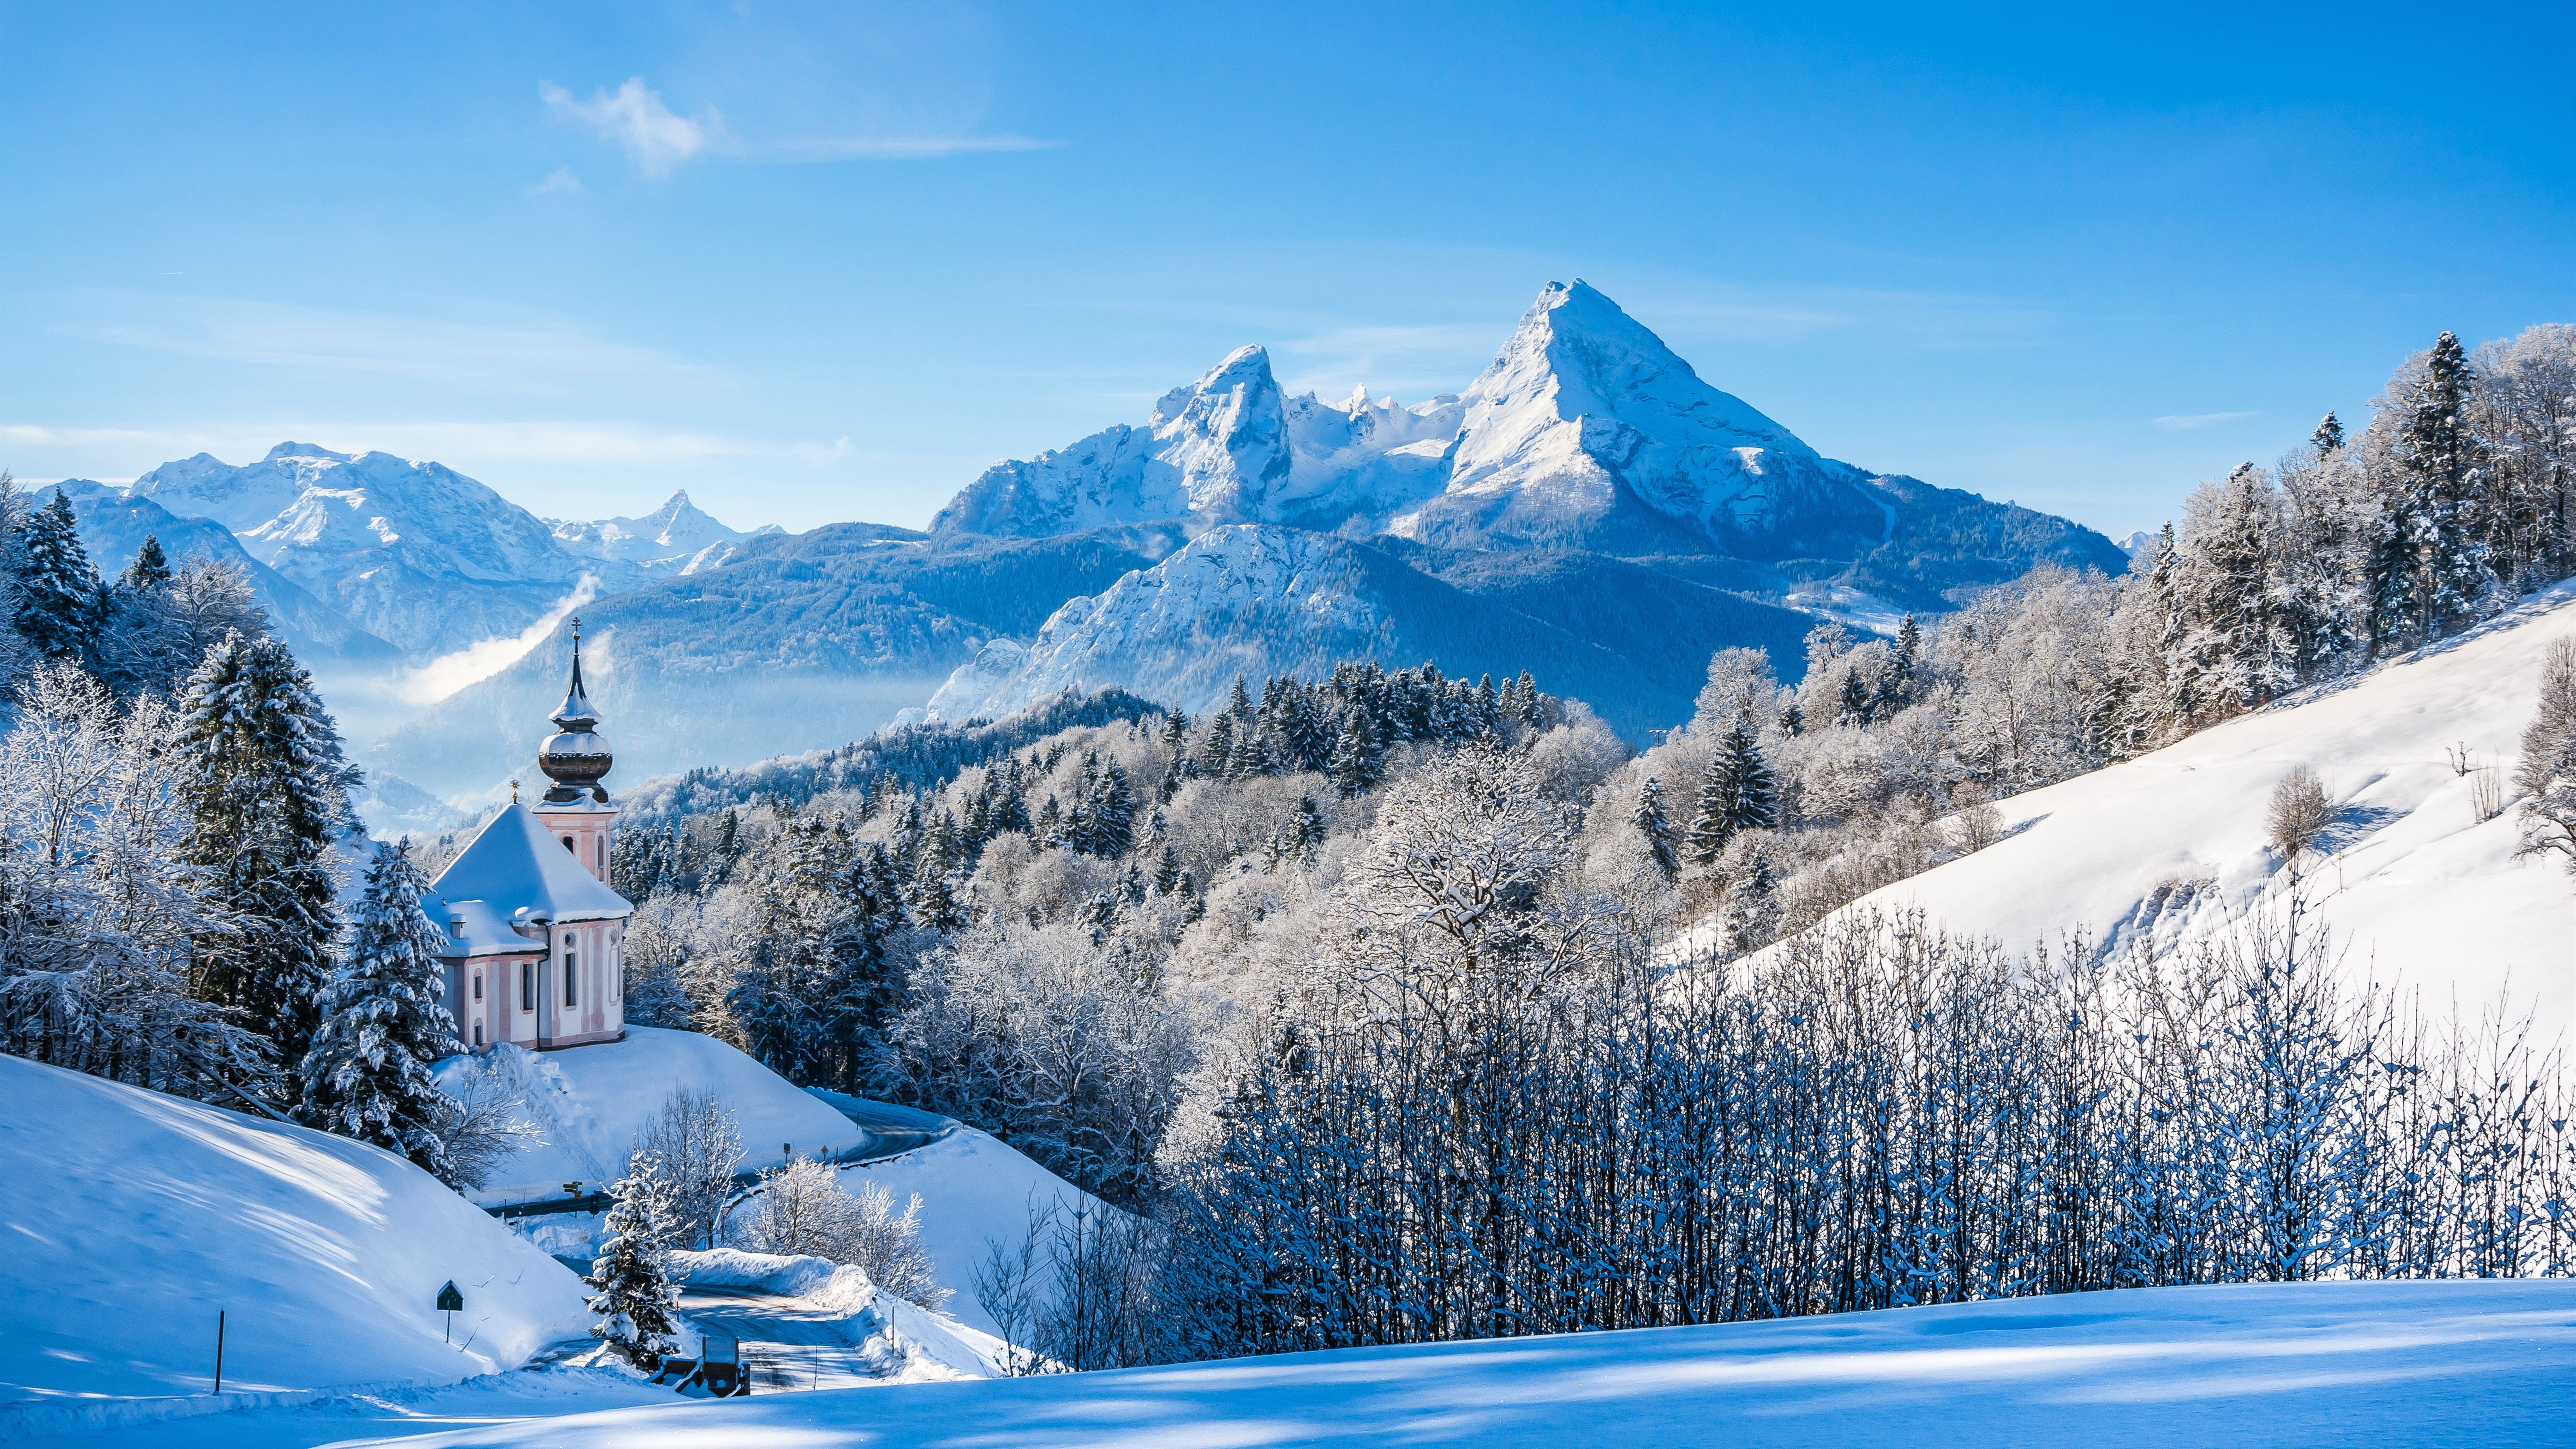  Berge Hintergrundbild 7680x4320. Deutschland, Bayern, Kirche, Bäume, Berge, Schnee, Winter 7680x4320 UHD 8K Hintergrundbilder, HD, Bild